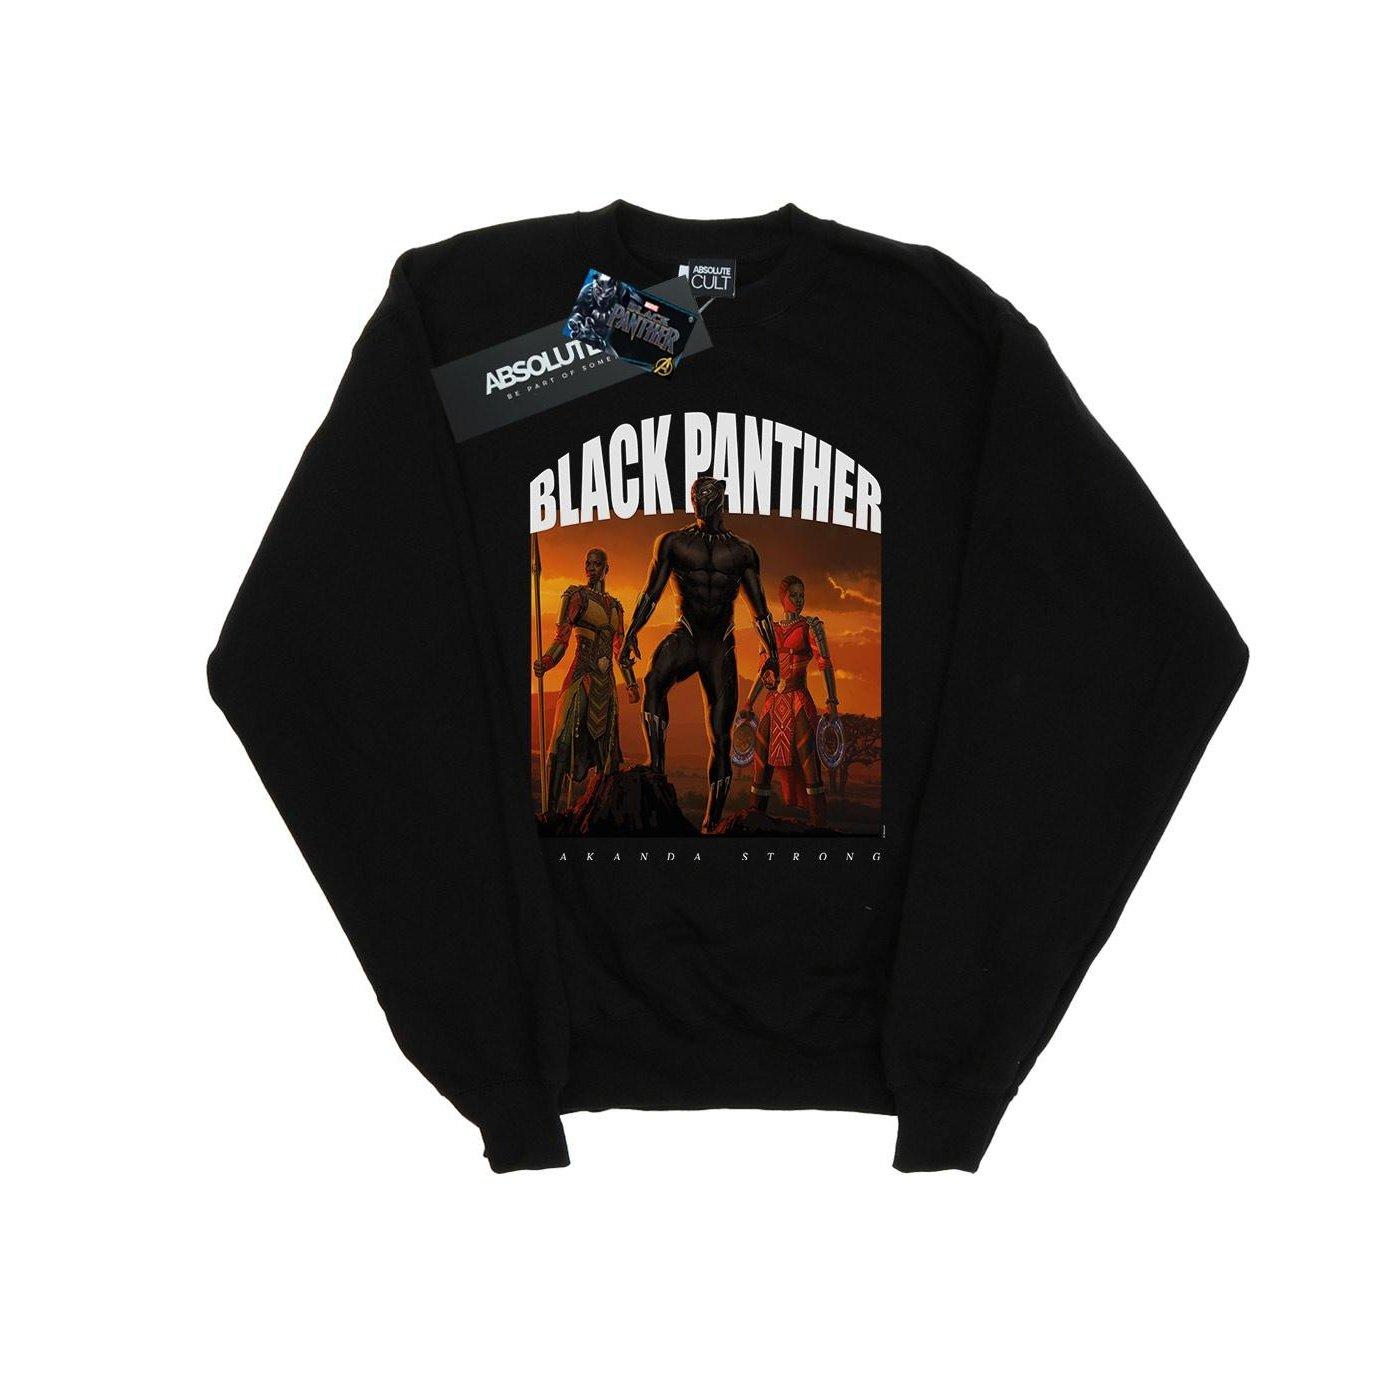 Black Panther Wakanda Strong Sweatshirt Herren Schwarz 5XL von MARVEL